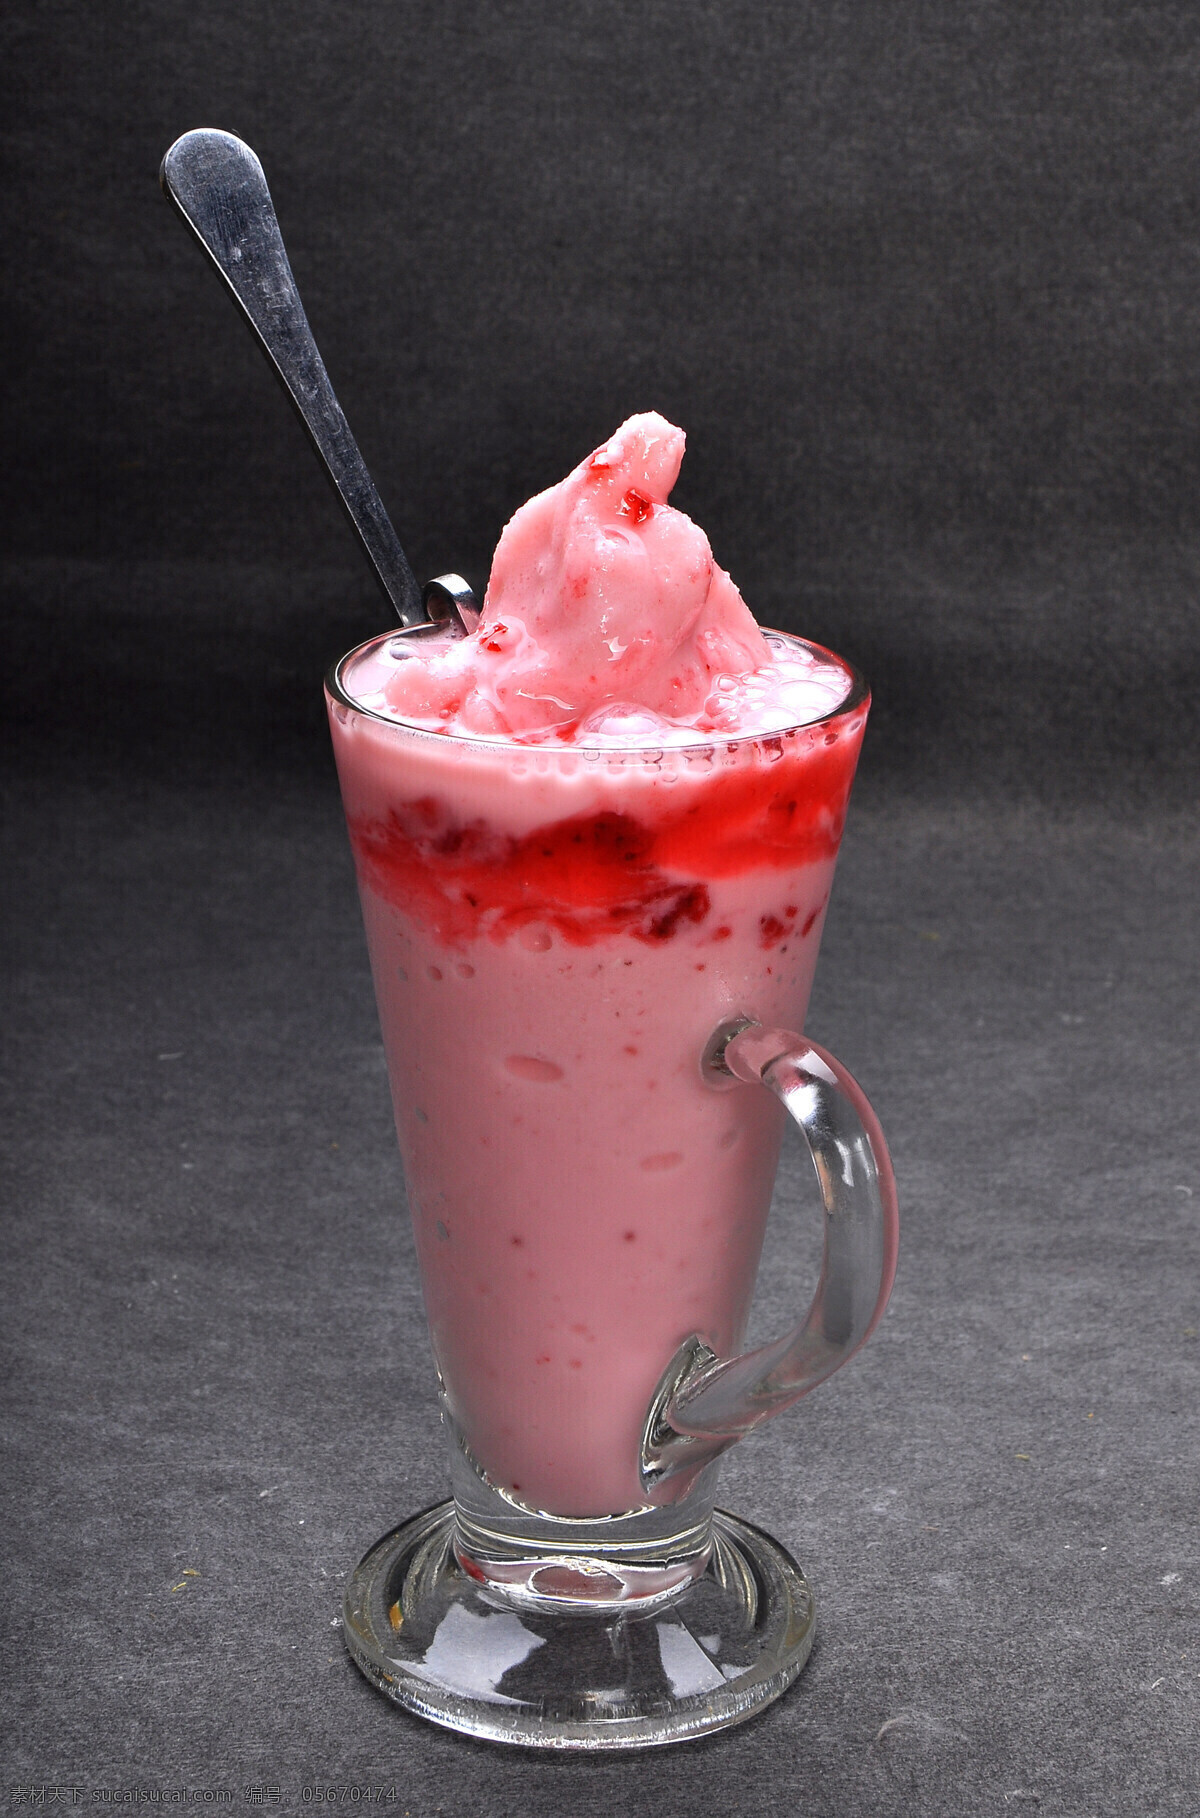 草莓 优格 乳 冰 沙 水果优格乳 饮品 酒水饮料 冷饮 草莓冰沙 餐饮美食 饮料酒水